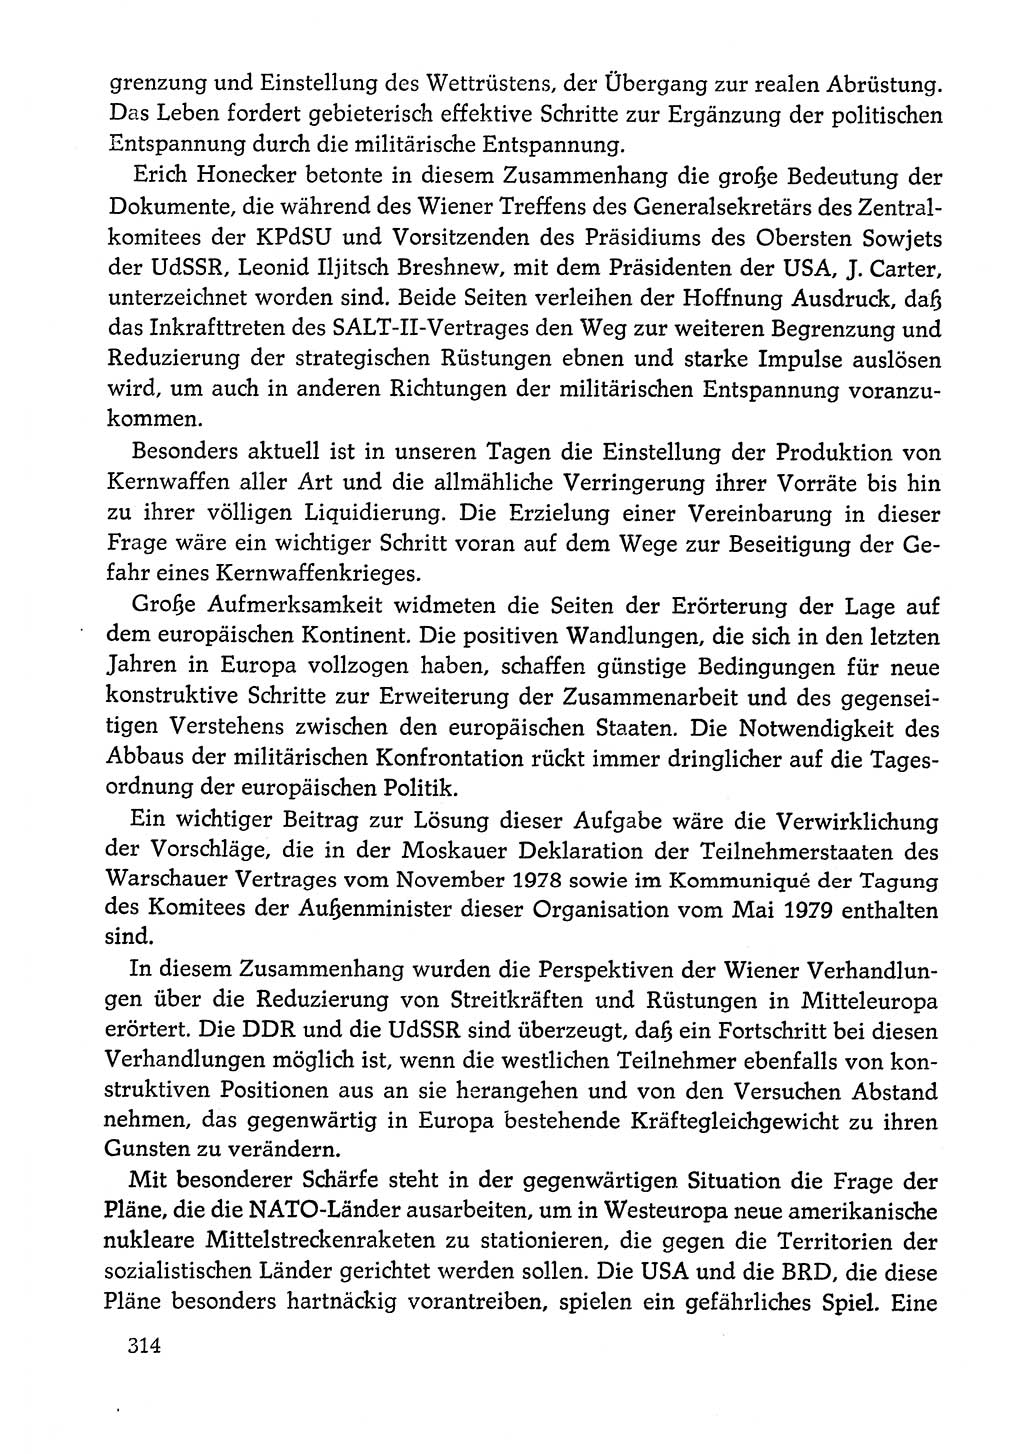 Dokumente der Sozialistischen Einheitspartei Deutschlands (SED) [Deutsche Demokratische Republik (DDR)] 1978-1979, Seite 314 (Dok. SED DDR 1978-1979, S. 314)